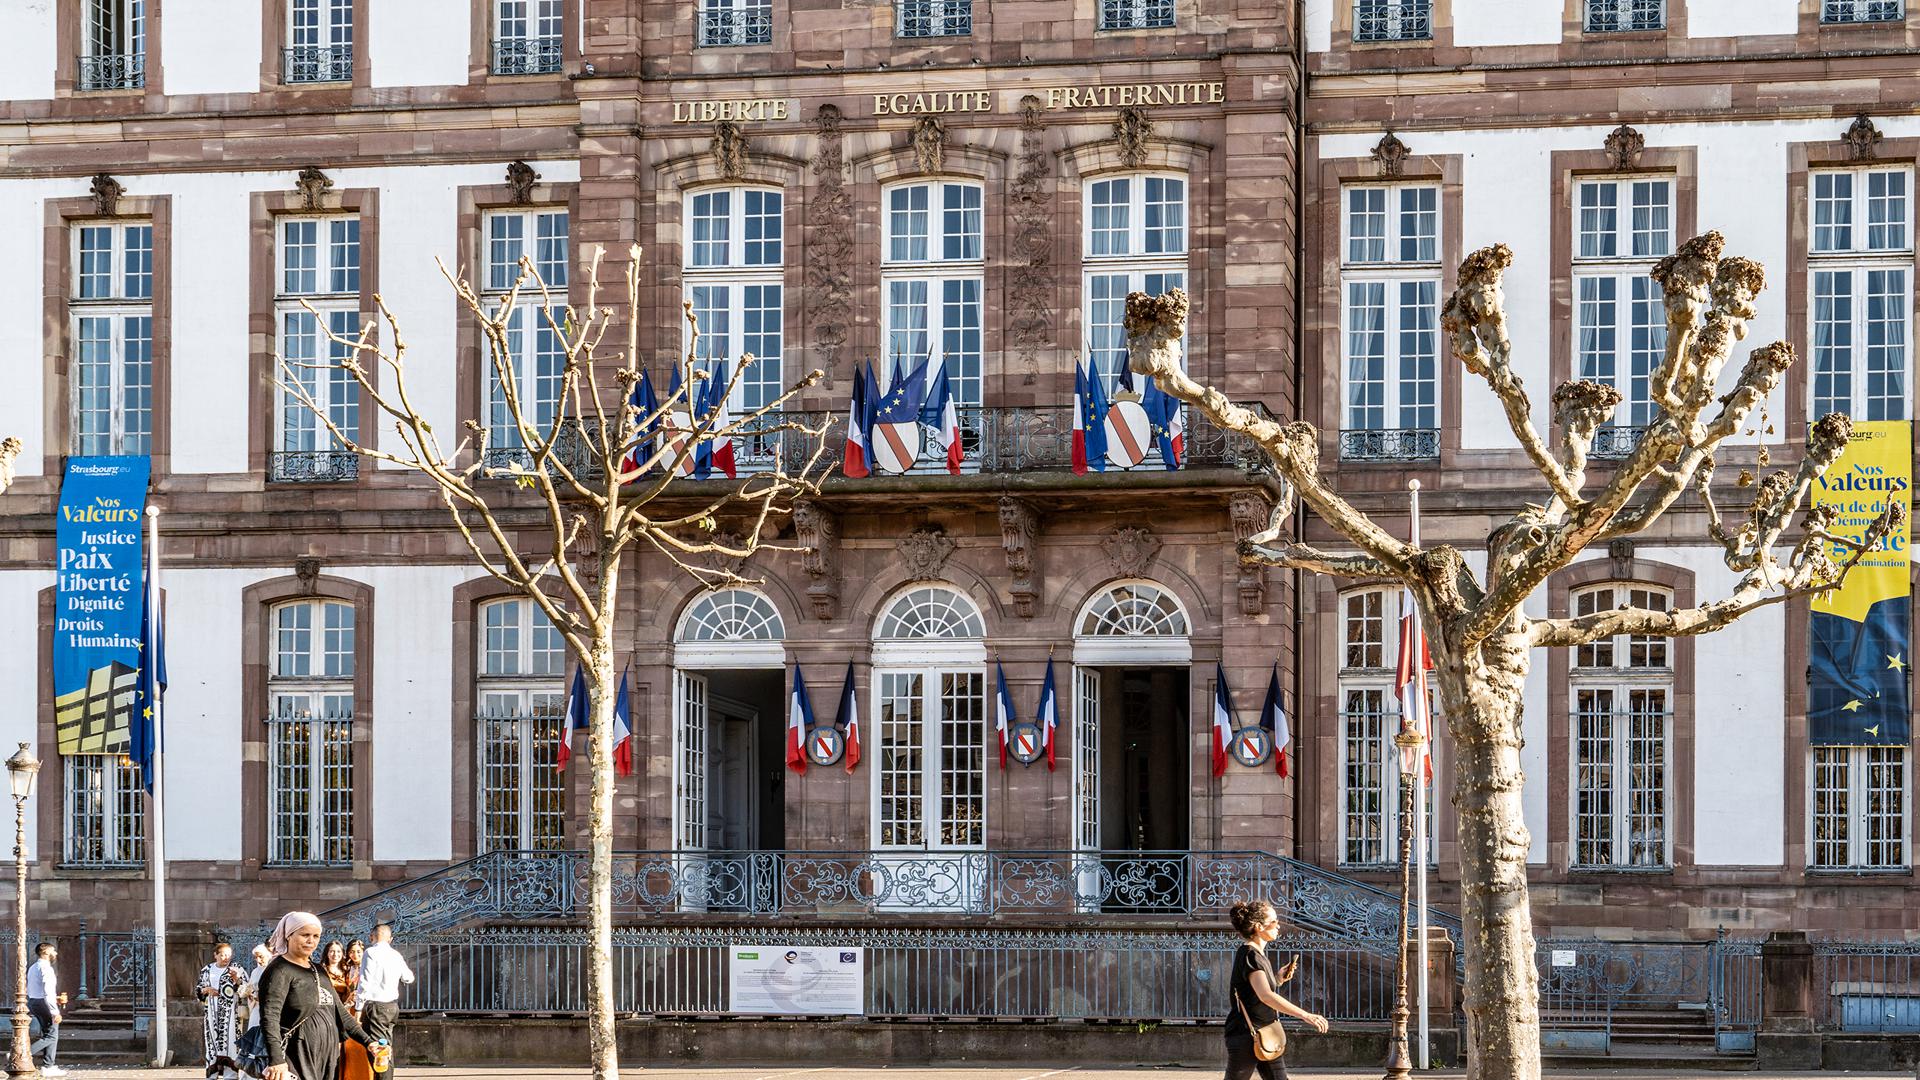 Nach den Angriffen der Hamas auf Israel hatte die Straßburger Stadtregierung rasch reagiert und vor dem historischen Rathaus die israelische Flagge gehisst. Weil dort aber schon die ukrainische und die armenische hingen, wurden 36 Stunden später alle drei Fahnen gegen Banner ausgetauscht, auf welchen die Werte der Europastadt aufgelistet sind. 